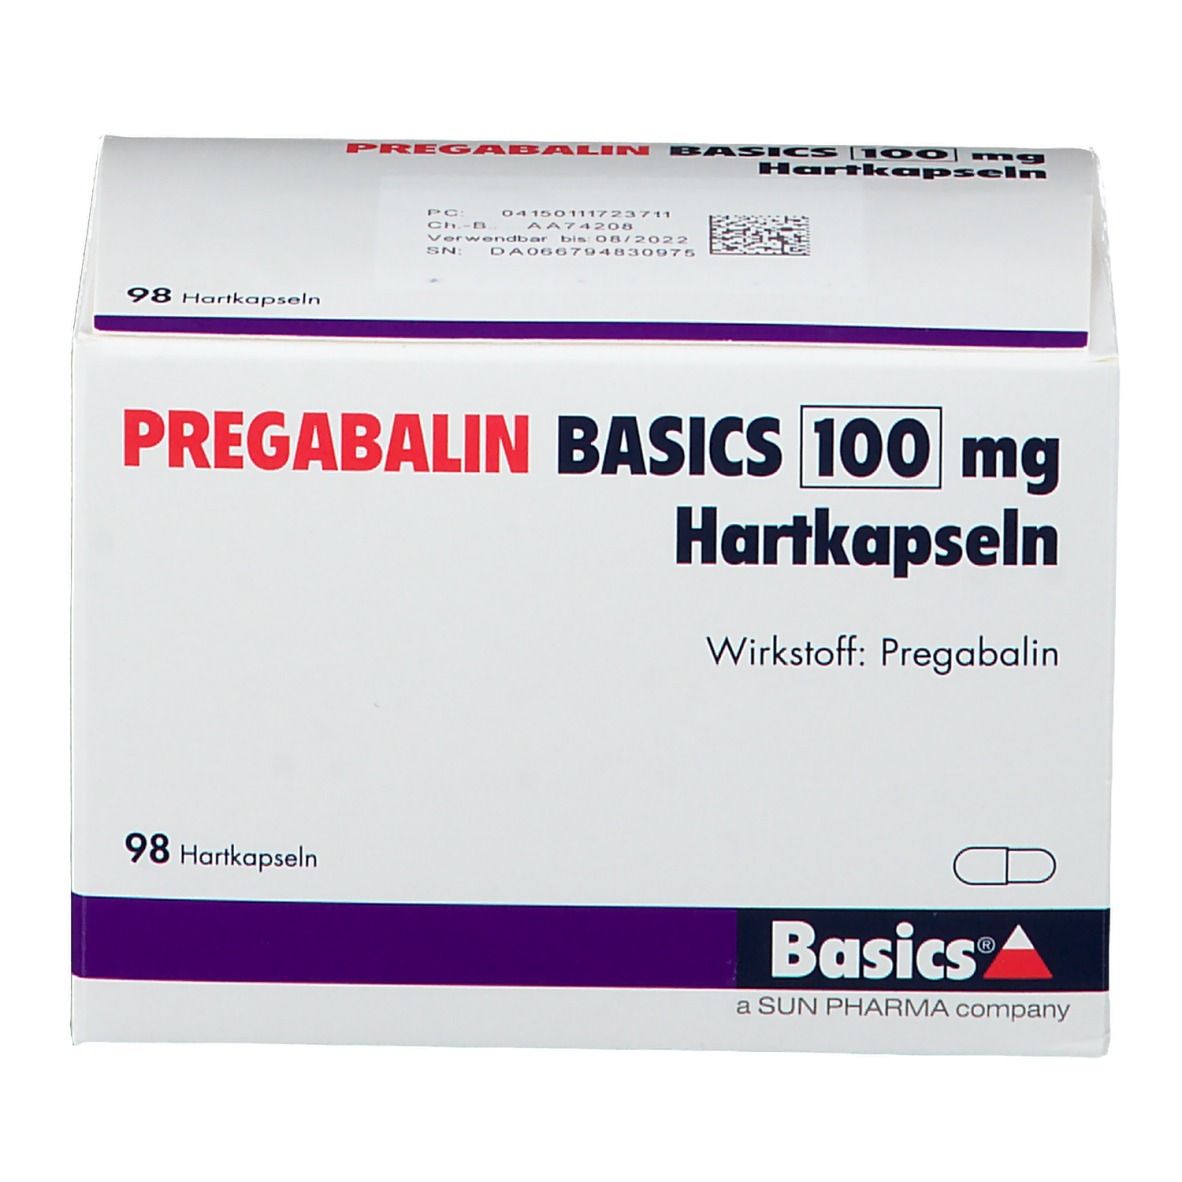 PREGABALIN BASICS 100 mg